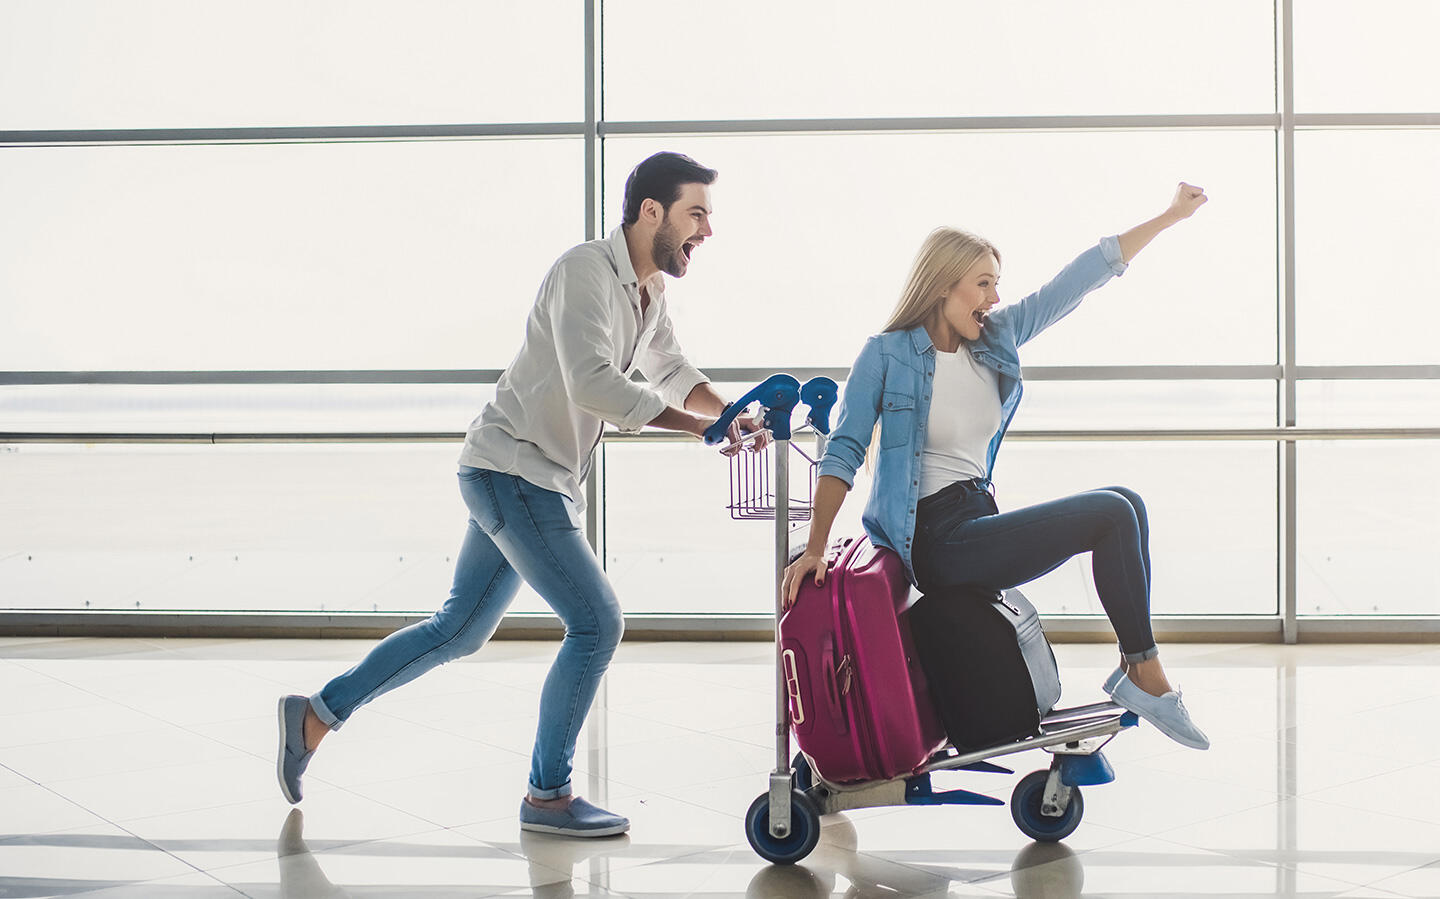 Un couple joyeux à l'aéroport d'Orly, l'homme poussant la femme sur un chariot à bagages